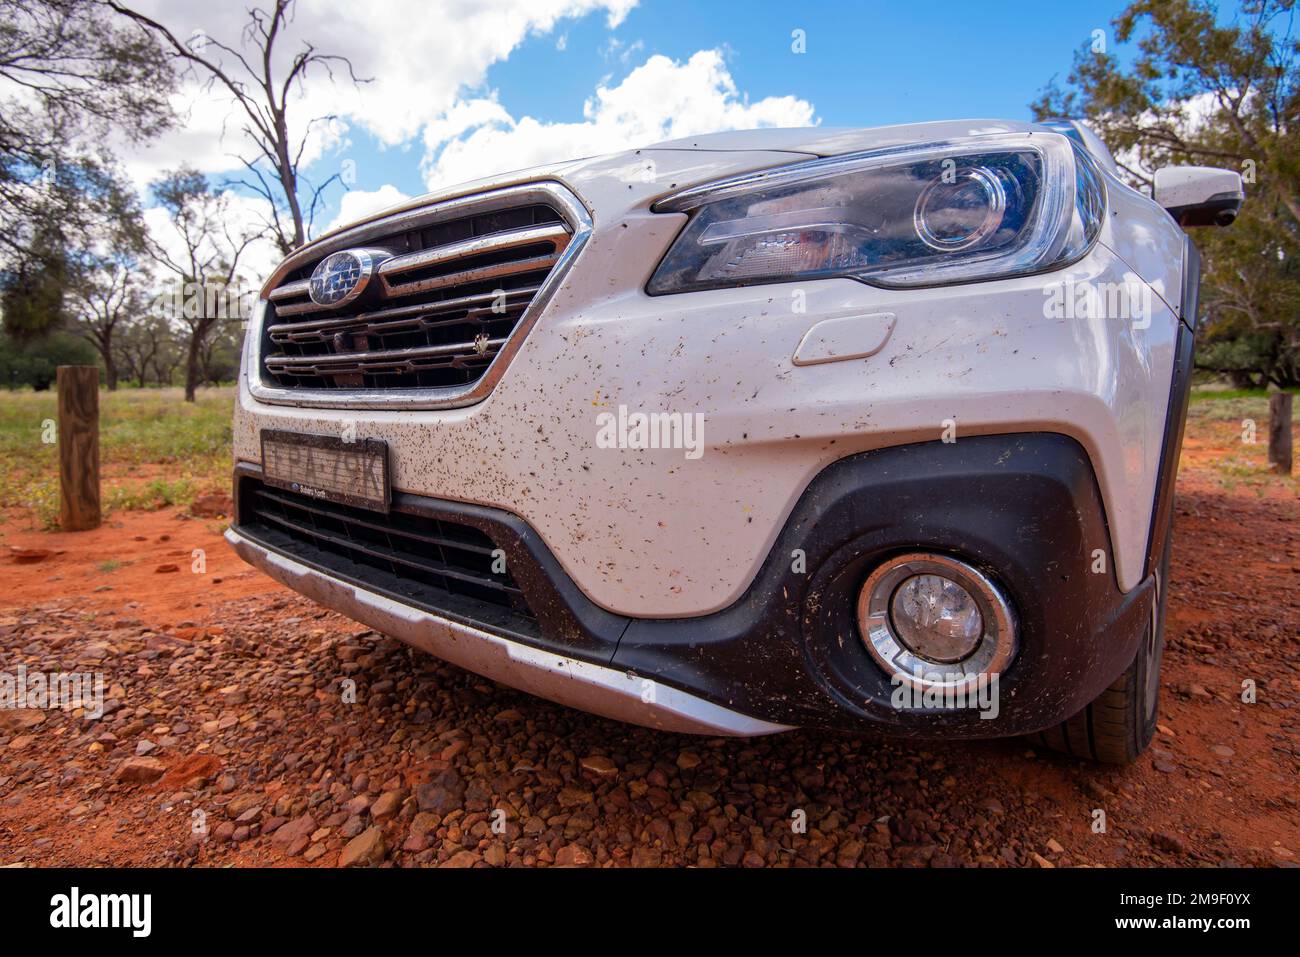 Eine Nahaufnahme der Vorderseite eines 2018 Subaru Outback Wagens, bedeckt mit zerquetschten Insekten und Insekten von der Reise im Outback New South Wales, Australien Stockfoto